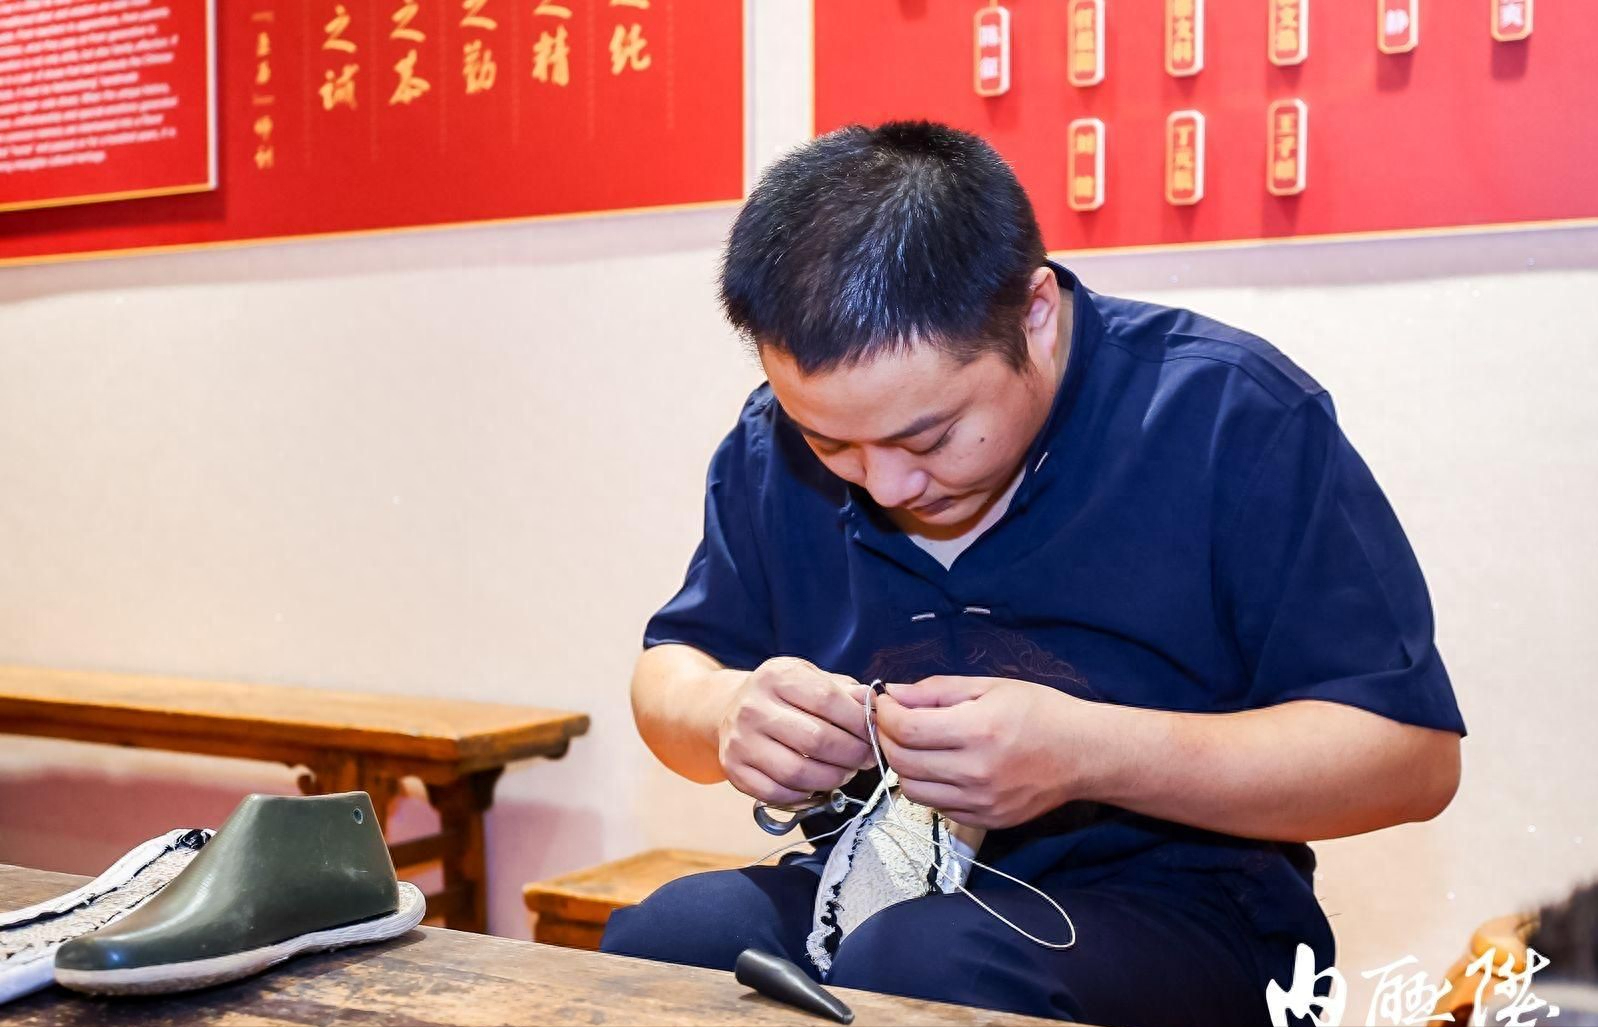 9月28日，全国首家布鞋主题博物馆——“北京布鞋文化博物馆”举办揭牌活动，该博物馆位于内联升大栅栏总店三层。据悉，北京布鞋文化博物馆面积约500平方米，包含了交流展览、非